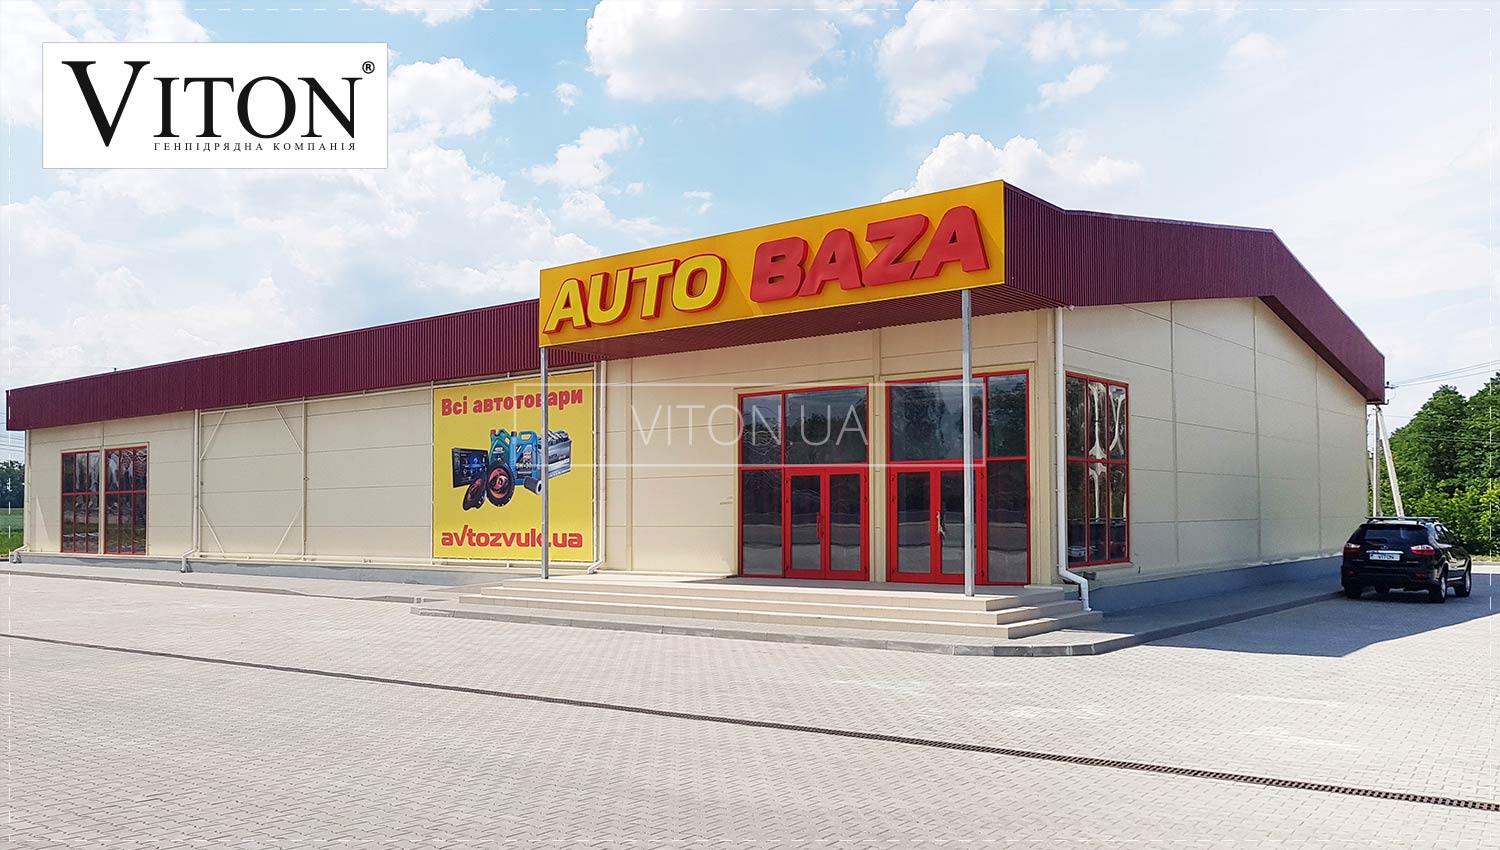 24 | Auto Baza Store